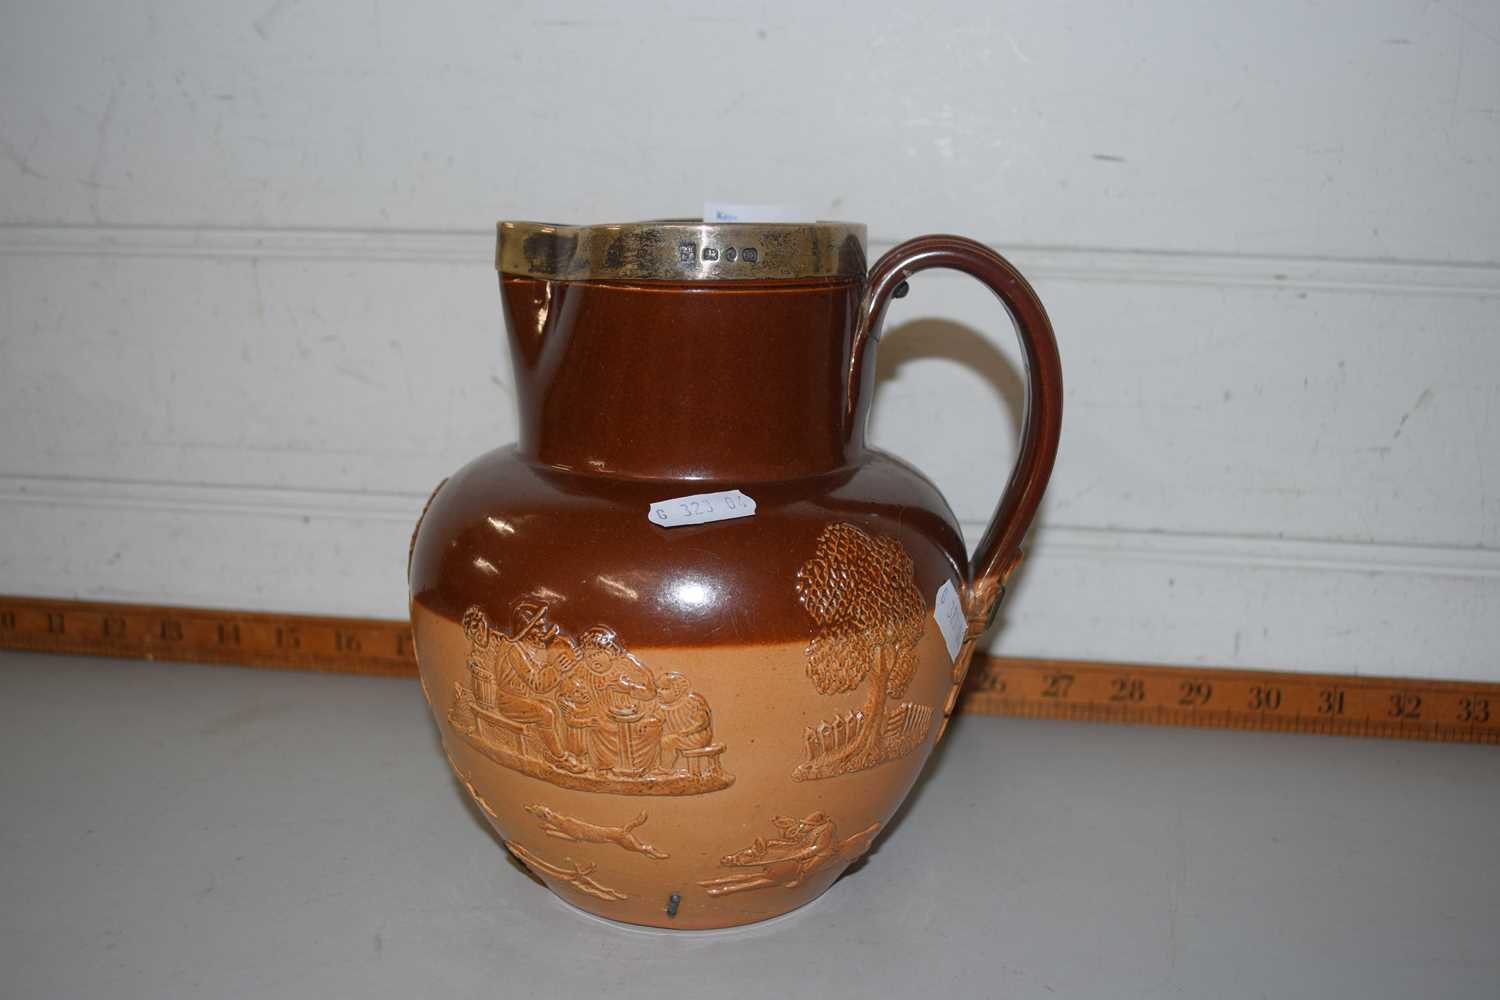 Doulton stone ware jug with silver rim (a/f)